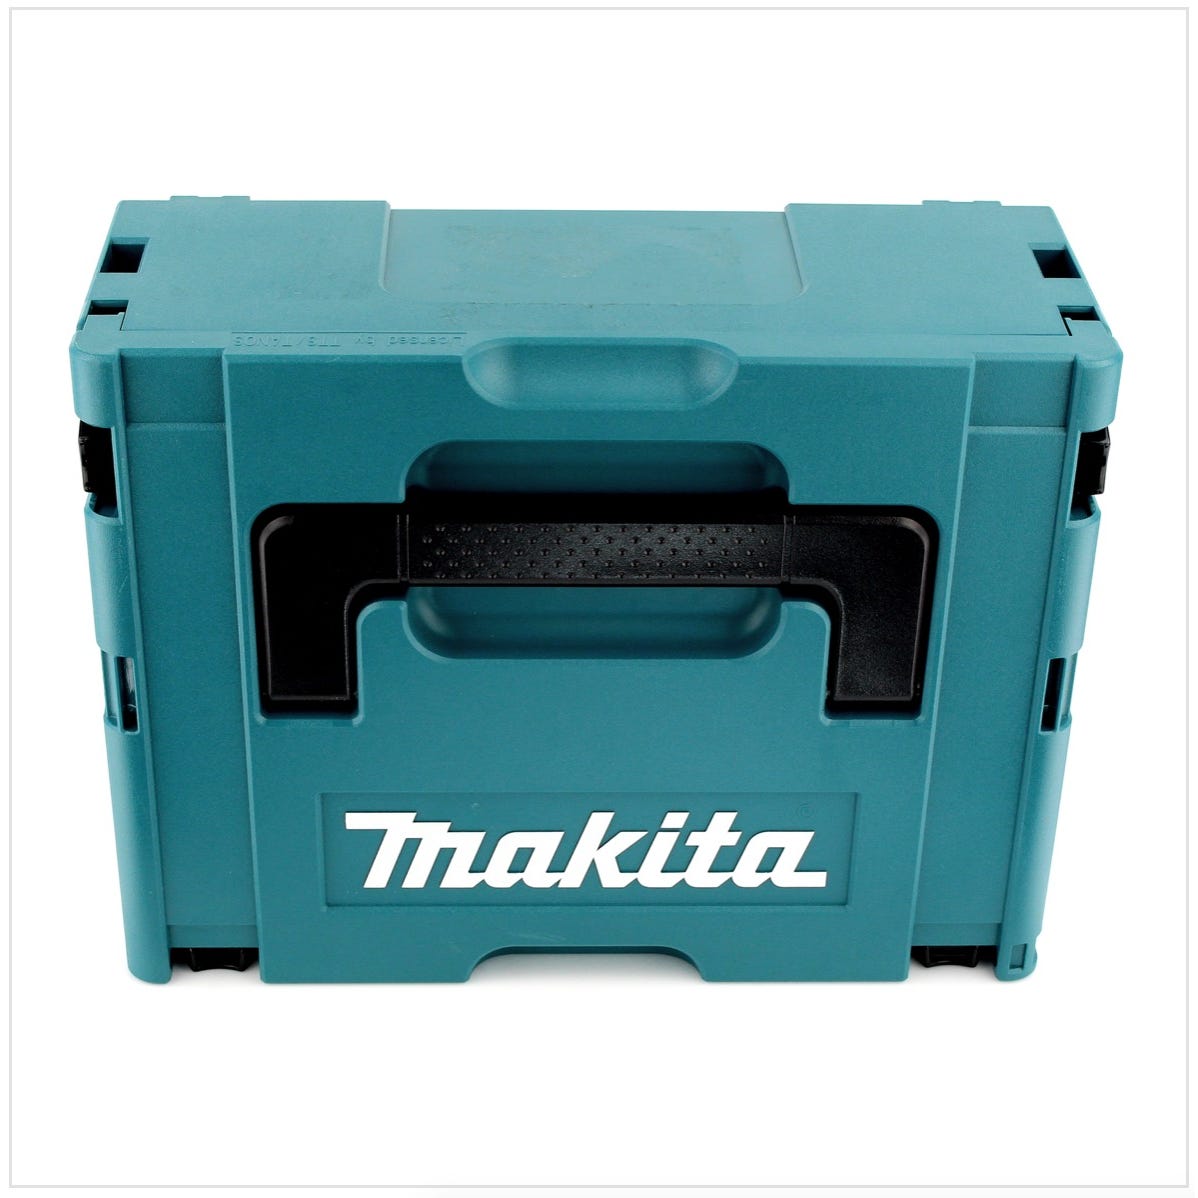 Makita DDF 483 Y1J 18 V Perceuse visseuse sans fil avec boîtier Makpac + 1x Batterie BL 1815 1,5 Ah - sans Chargeur 2